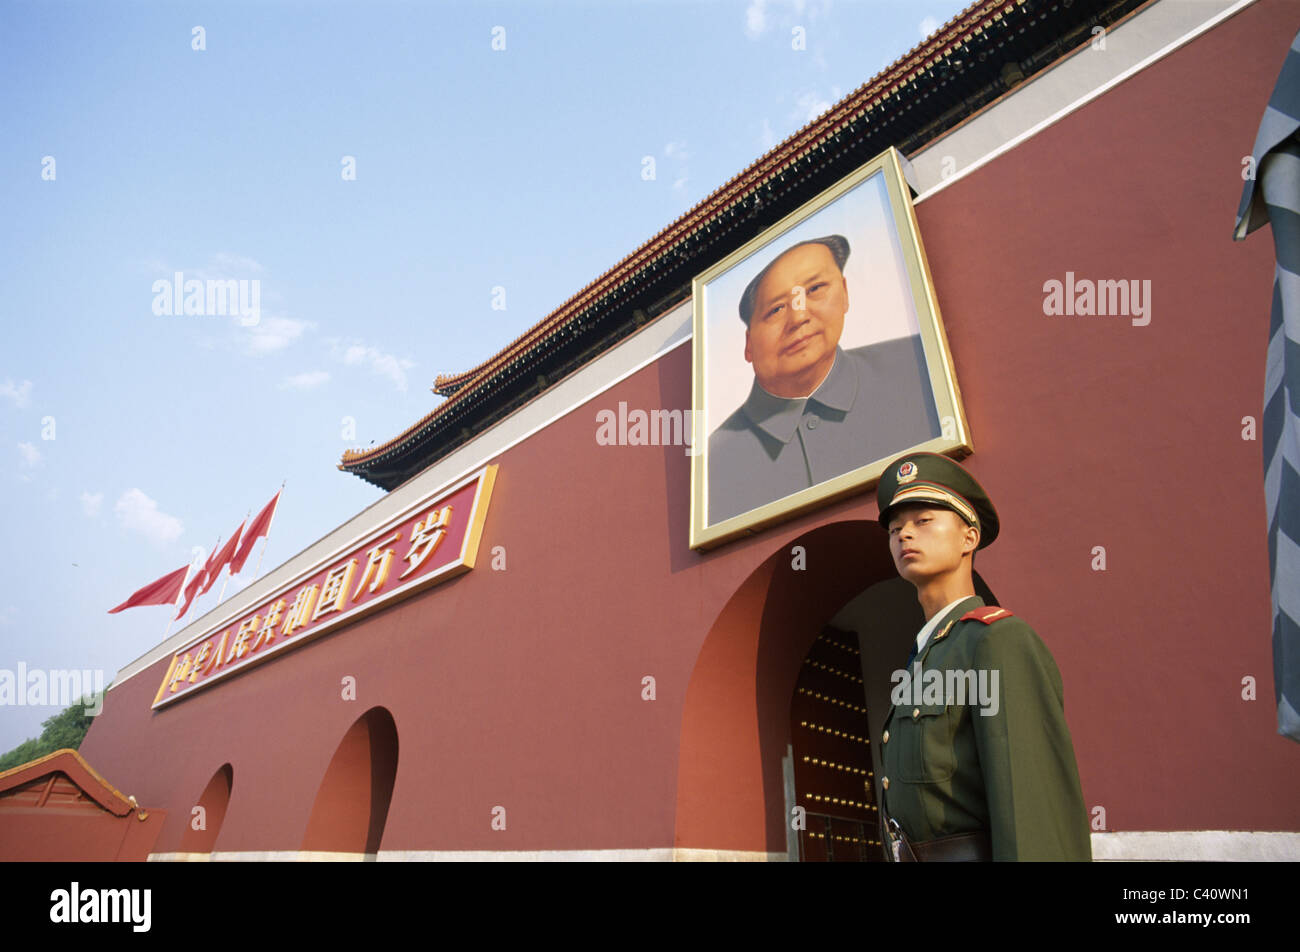 Asia, Beijing, Peking, China, Gate, Guard, Holiday, Landmark, Mao zedong, Portrait, Standing, Tiananmen, Tiananmen square, Touri Stock Photo